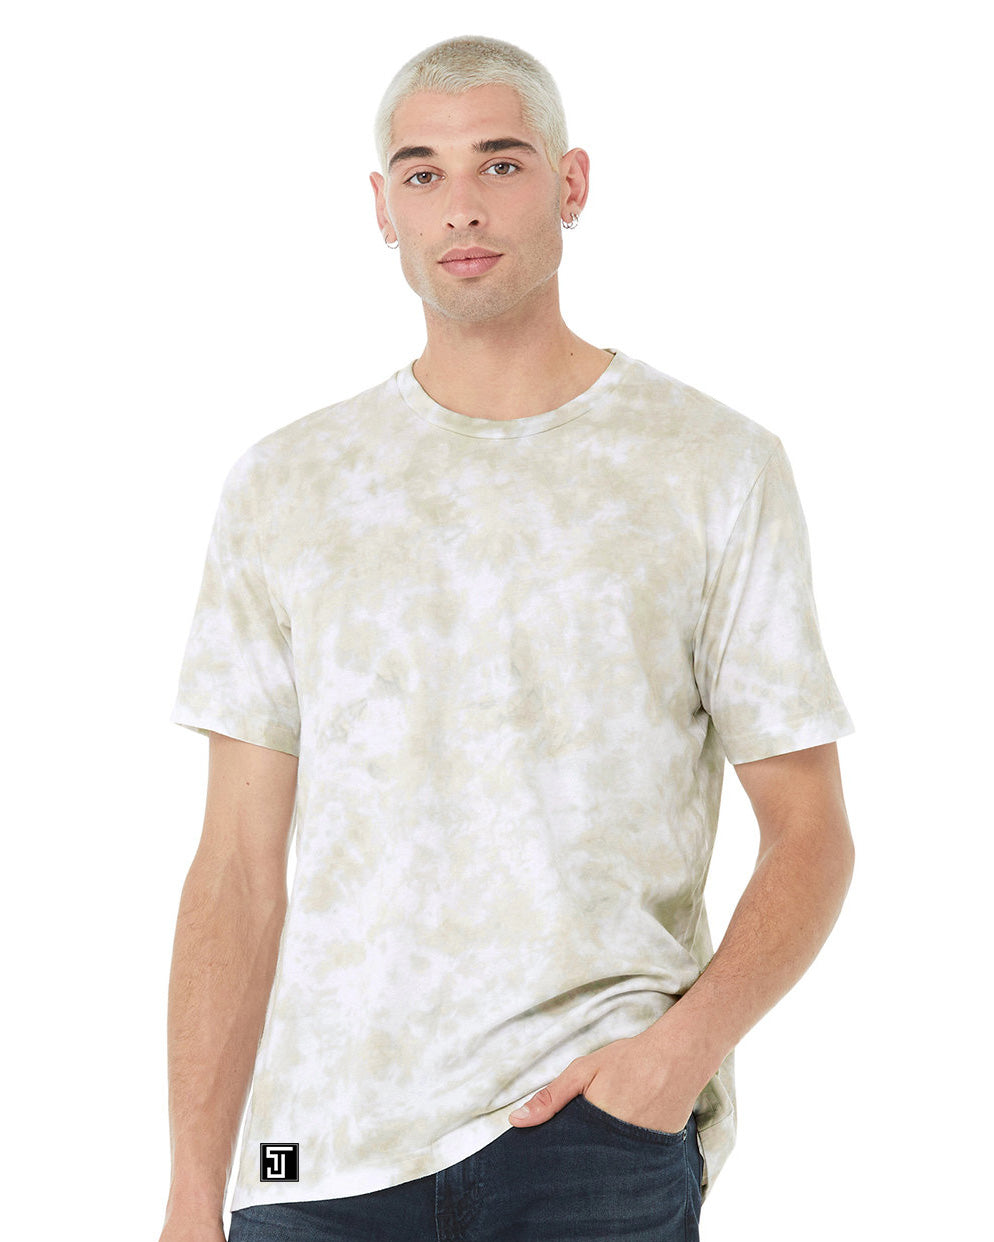 Tye-Dye Bare All T-Shirt (White/Cotton Candy Tye-Dye)